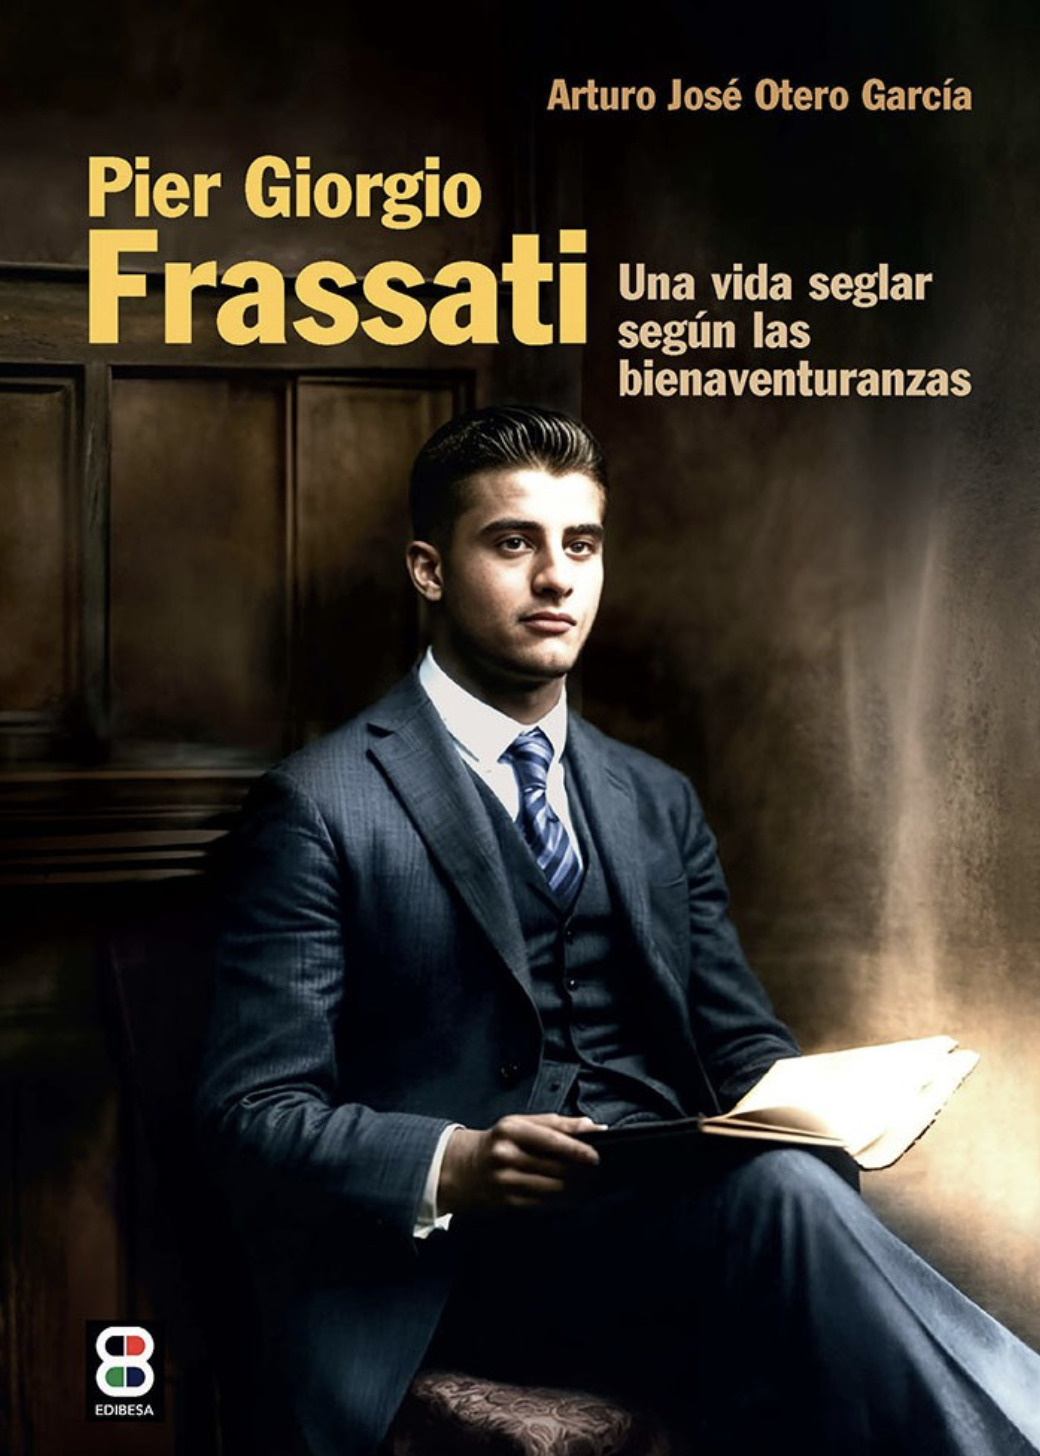 Pier Giorgio Frassati. Una vida seglar según las bienaventuranzas